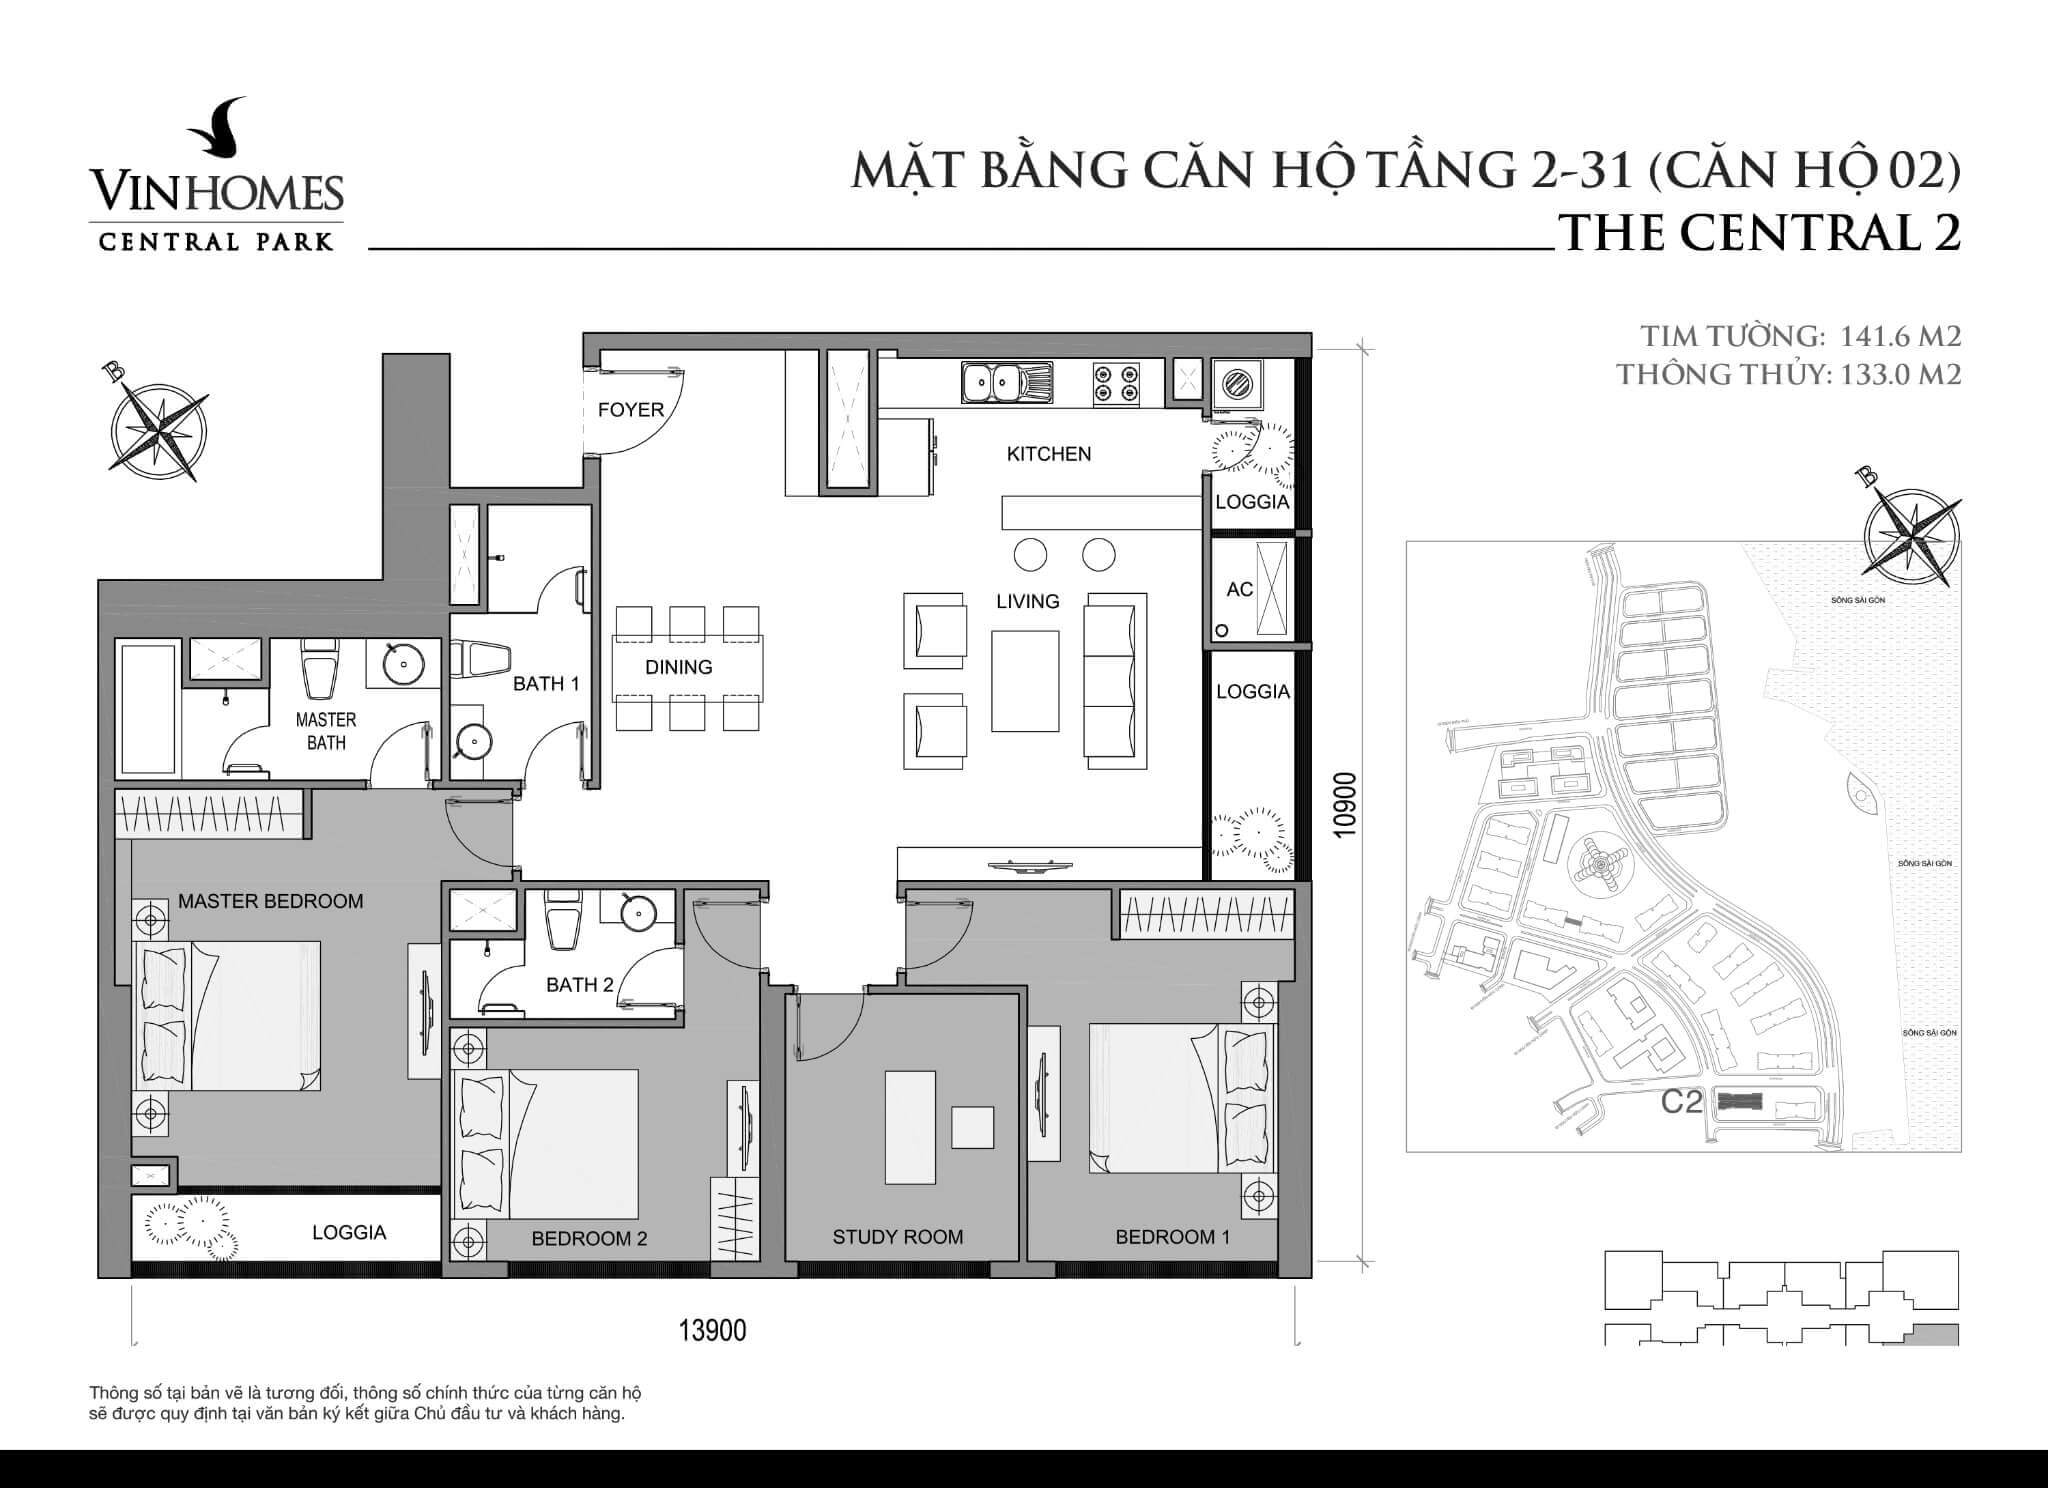 layout căn hộ số 2 tầng 2-31 Central 2